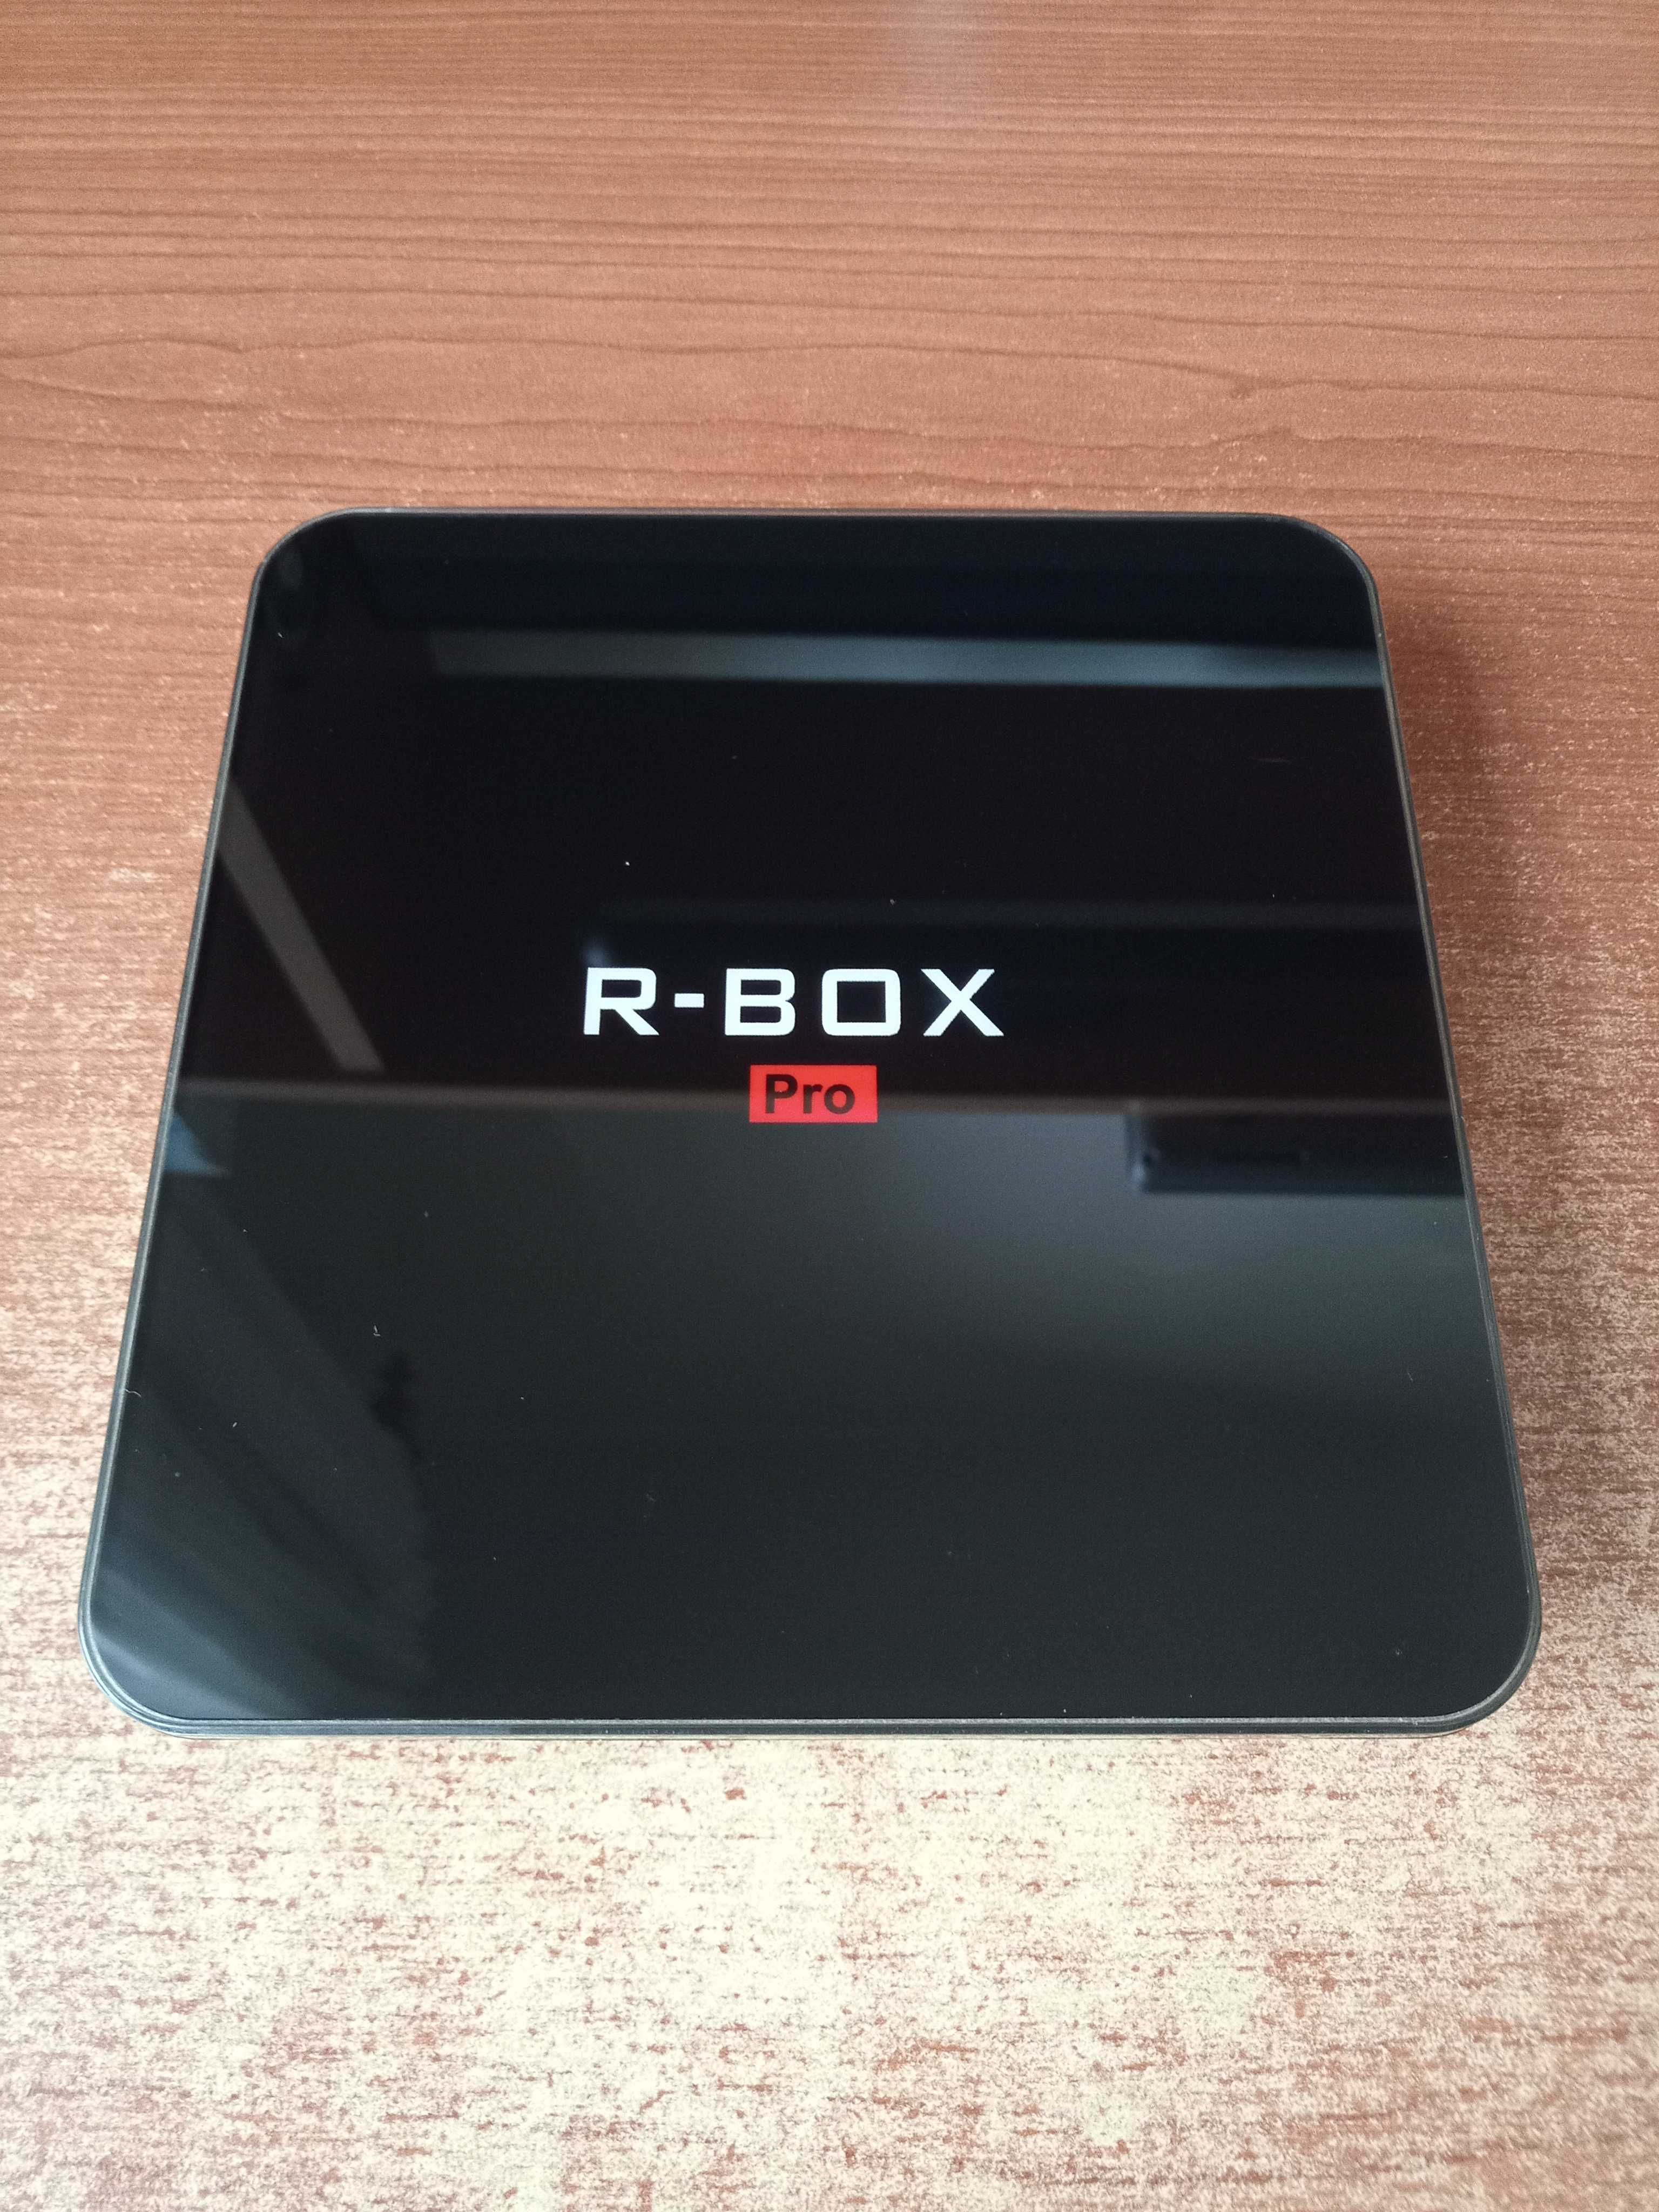 TV Box R-BOX Pro 3Gb RAM + 16Gb ROM